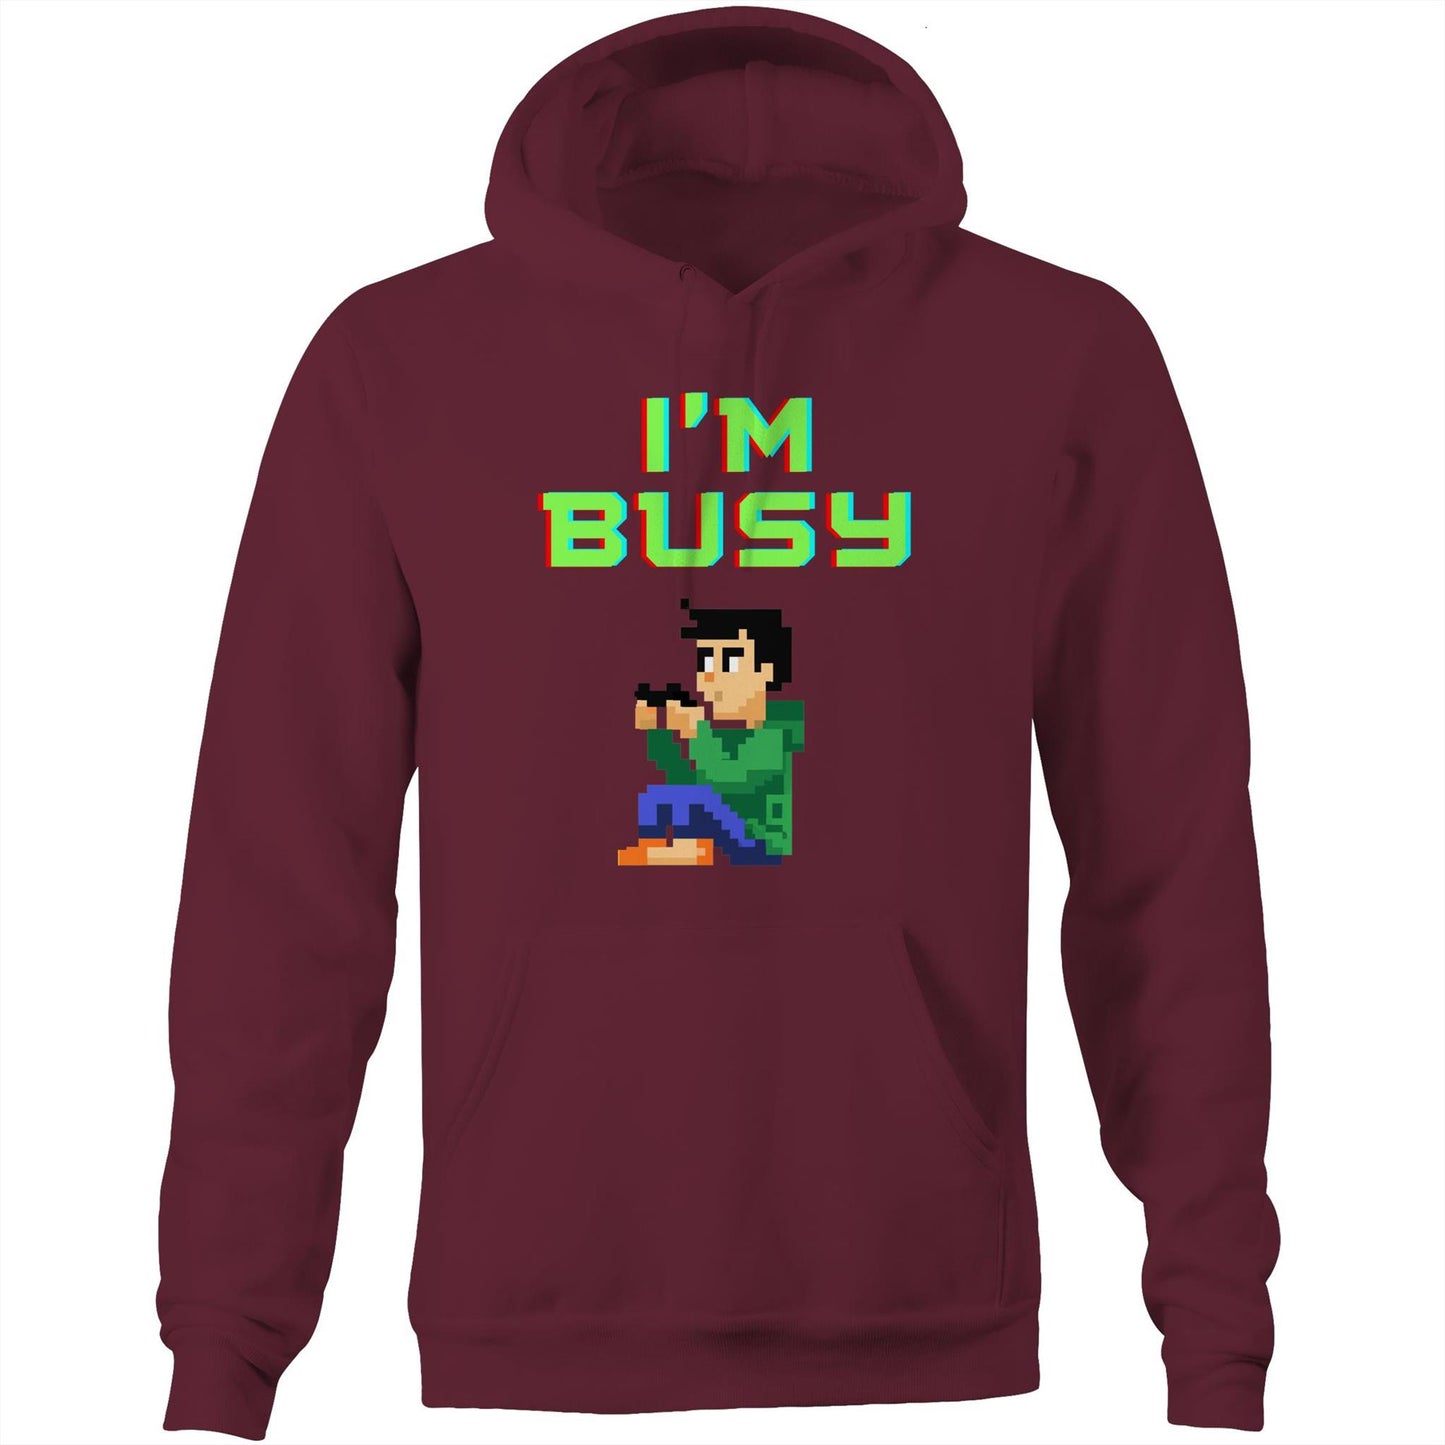 Busy - Pocket Hoodie Sweatshirt